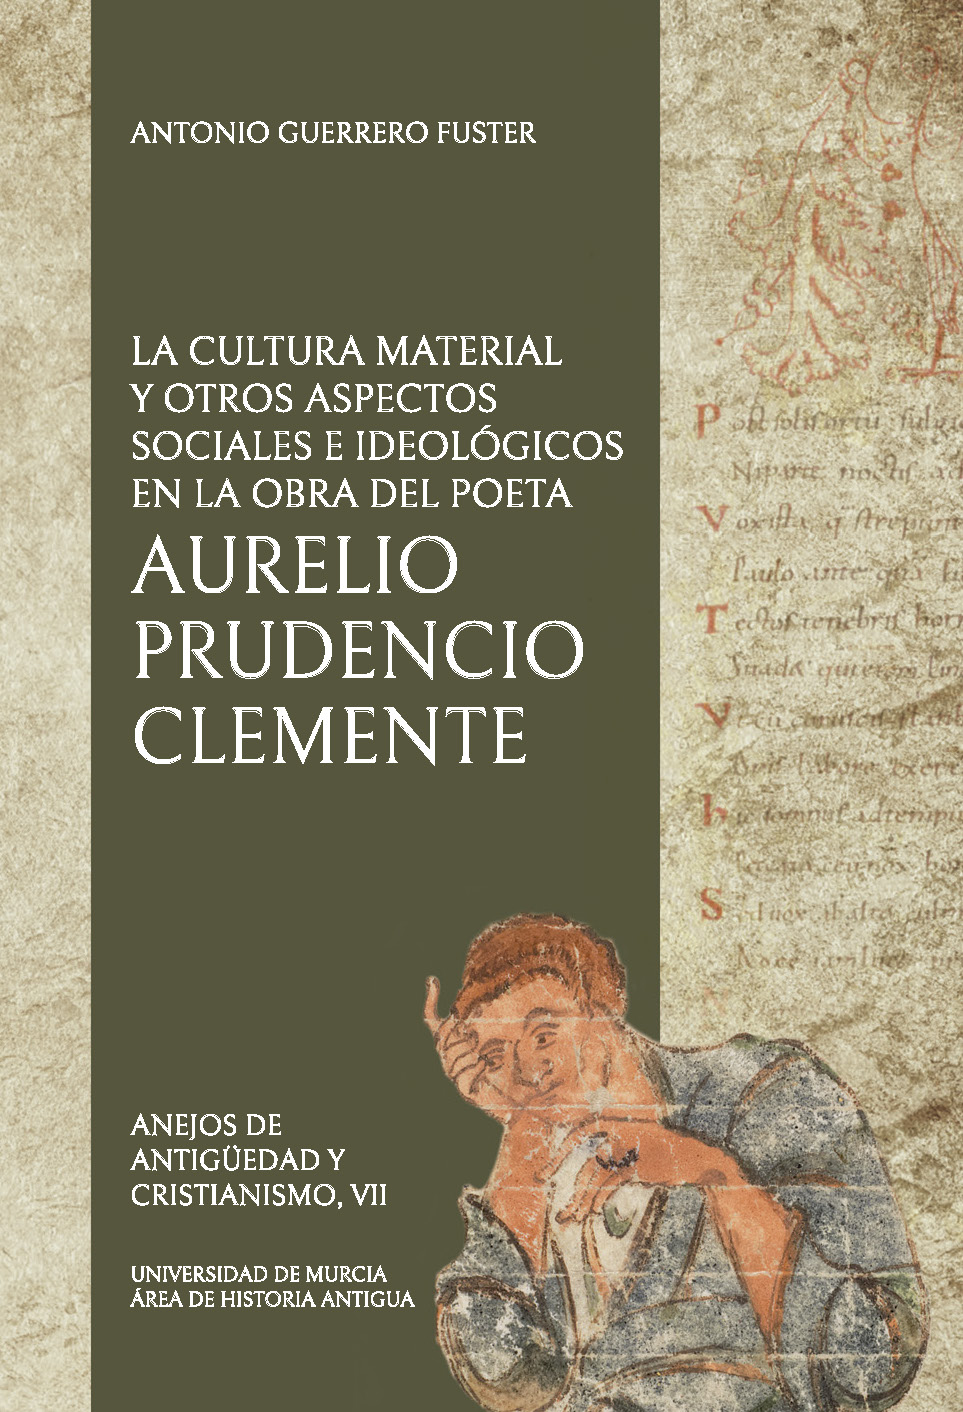 Imagen de portada del libro La cultura material y otros aspectos sociales e ideológicos en la obra del poeta Aurelio Prudencio Clemente.